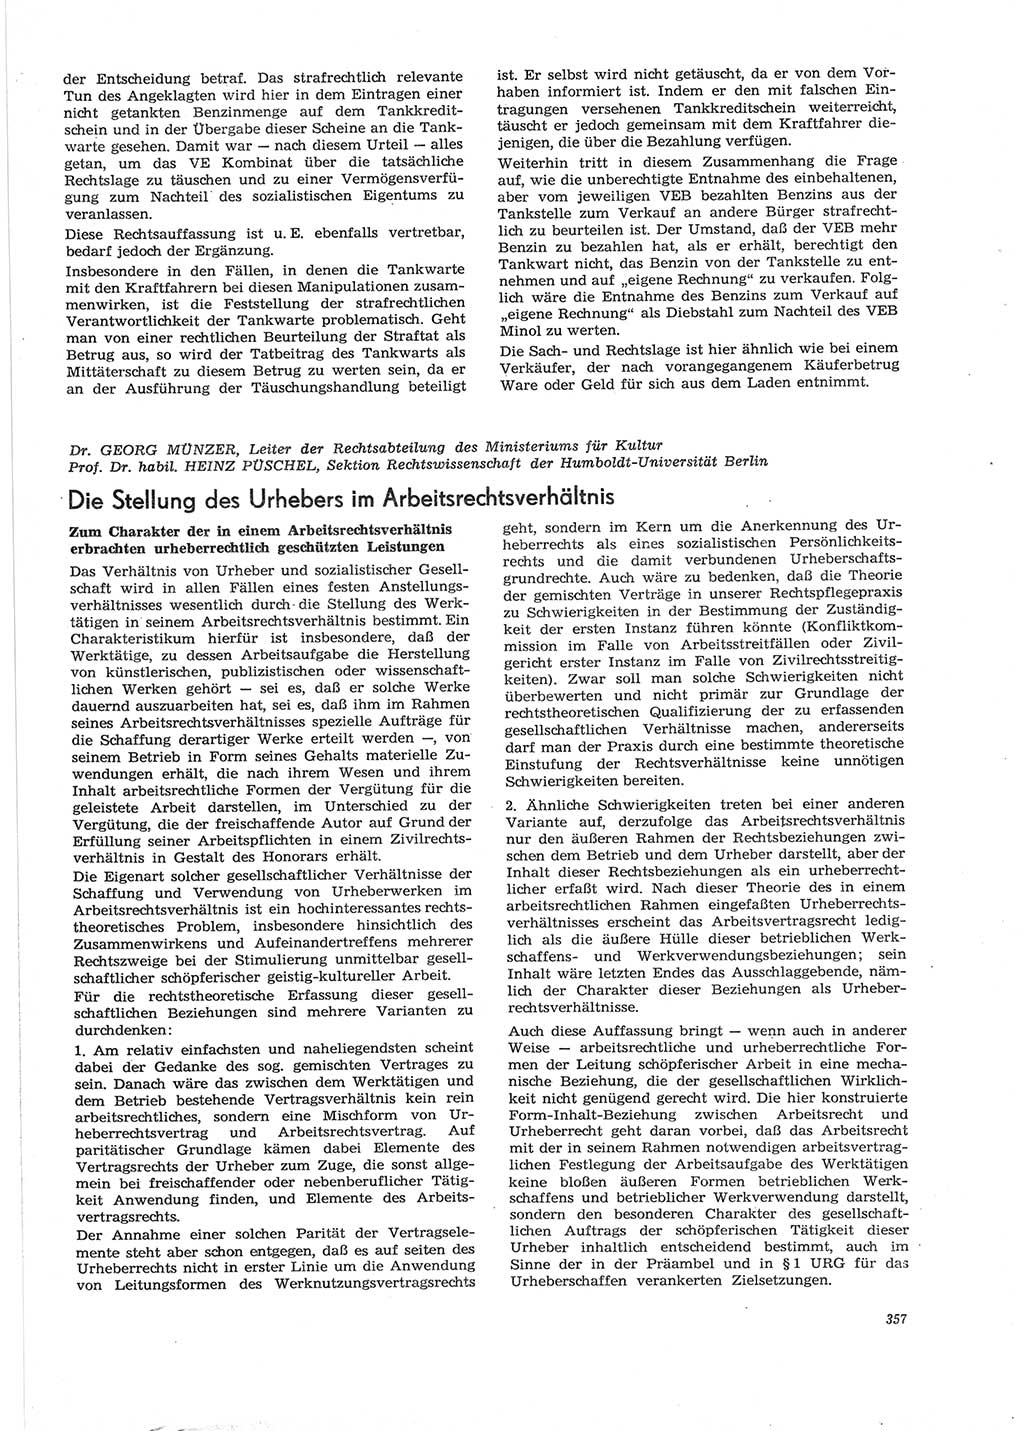 Neue Justiz (NJ), Zeitschrift für Recht und Rechtswissenschaft [Deutsche Demokratische Republik (DDR)], 28. Jahrgang 1974, Seite 357 (NJ DDR 1974, S. 357)